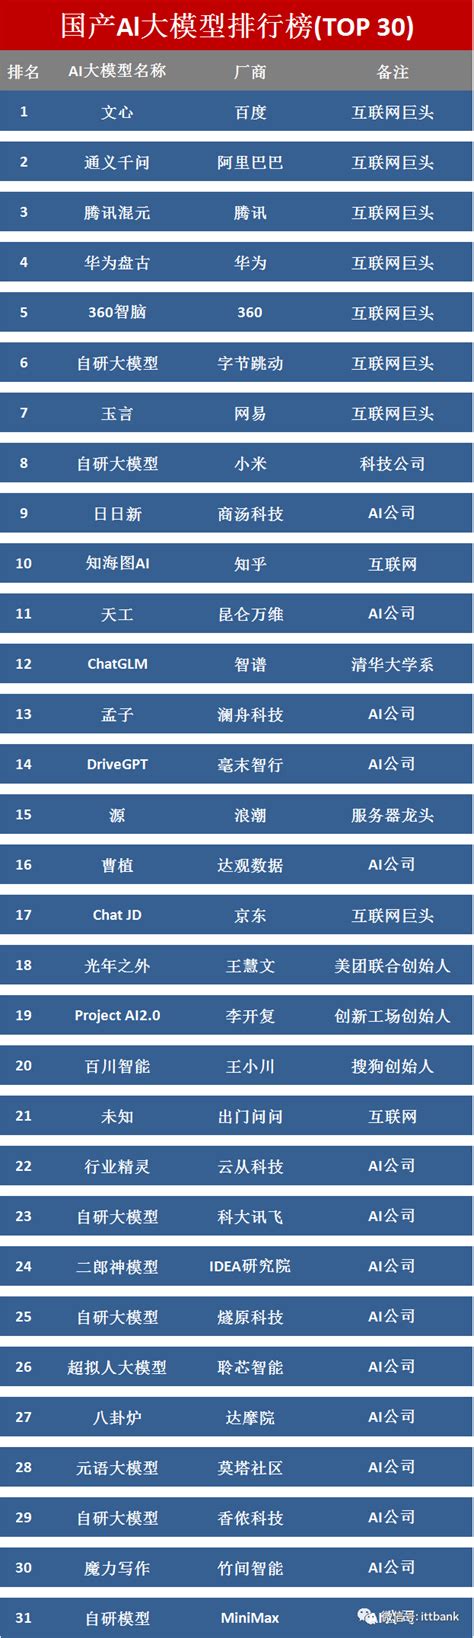 国产ChatGPT Al大模型排行榜(TOP 30)-CSDN博客